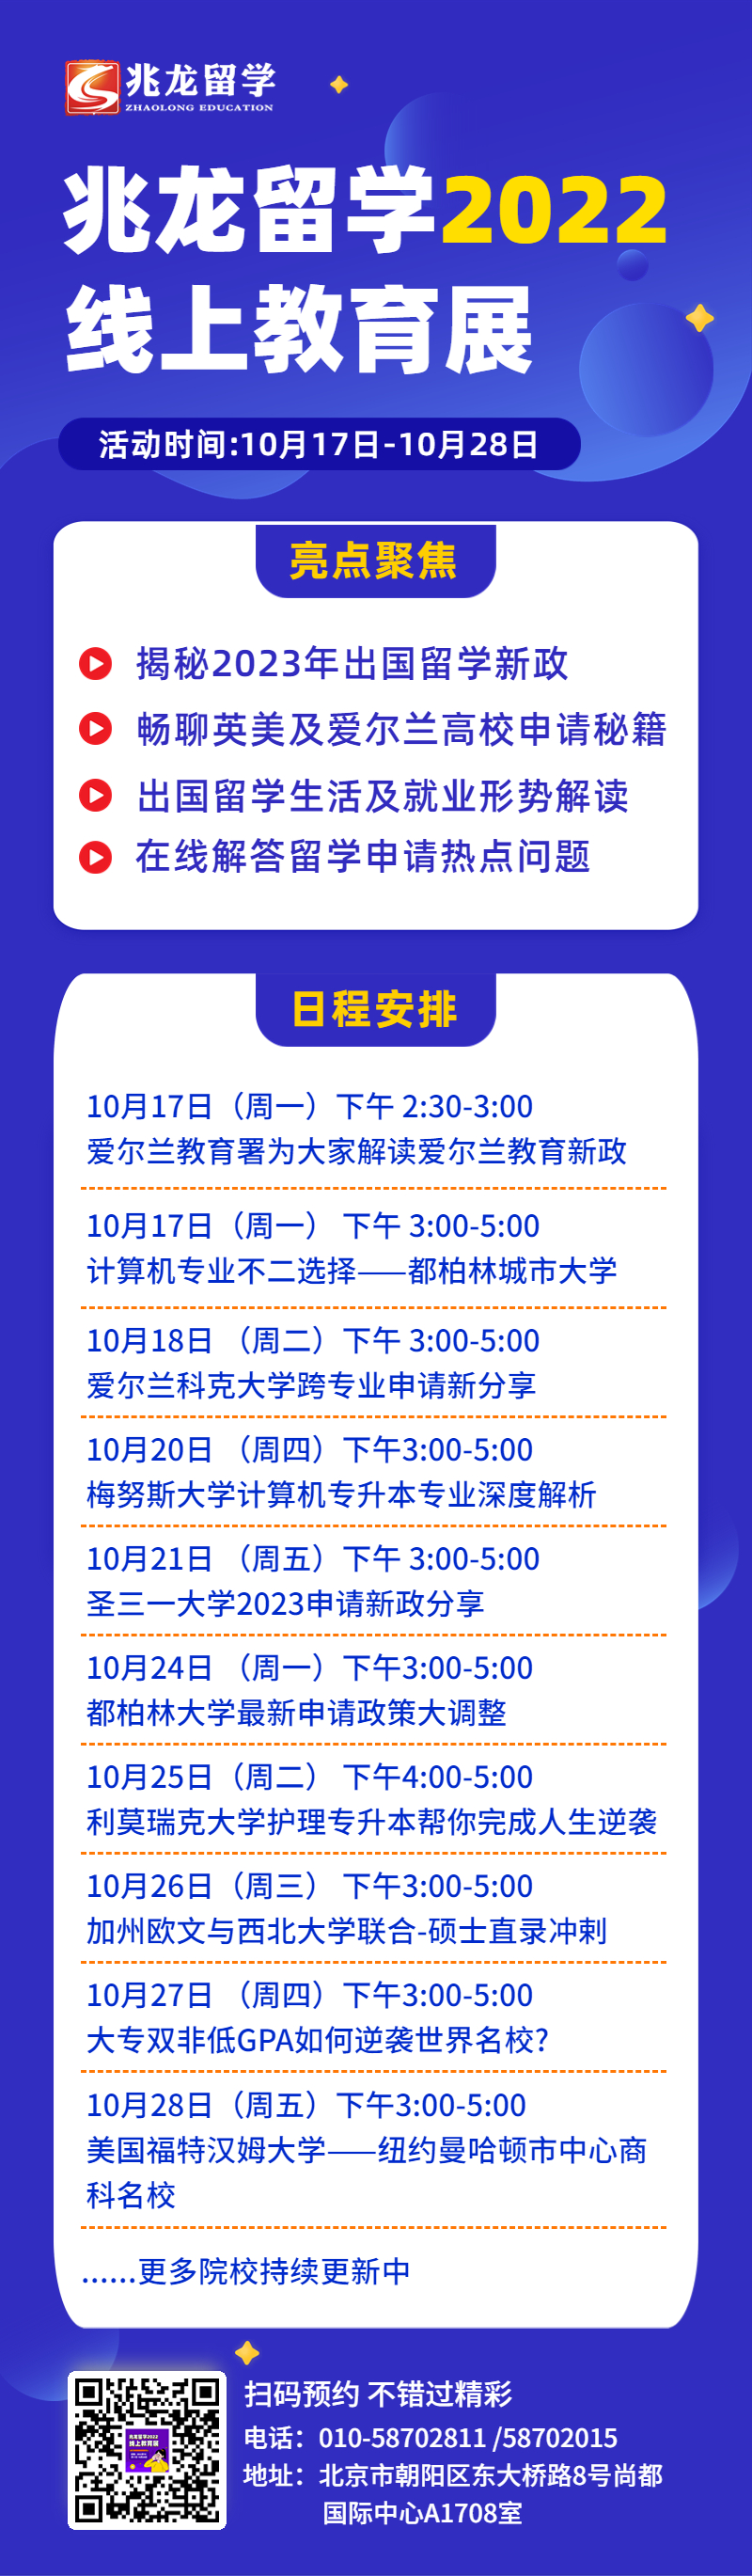 兆龙留学2022线上教育展.jpg